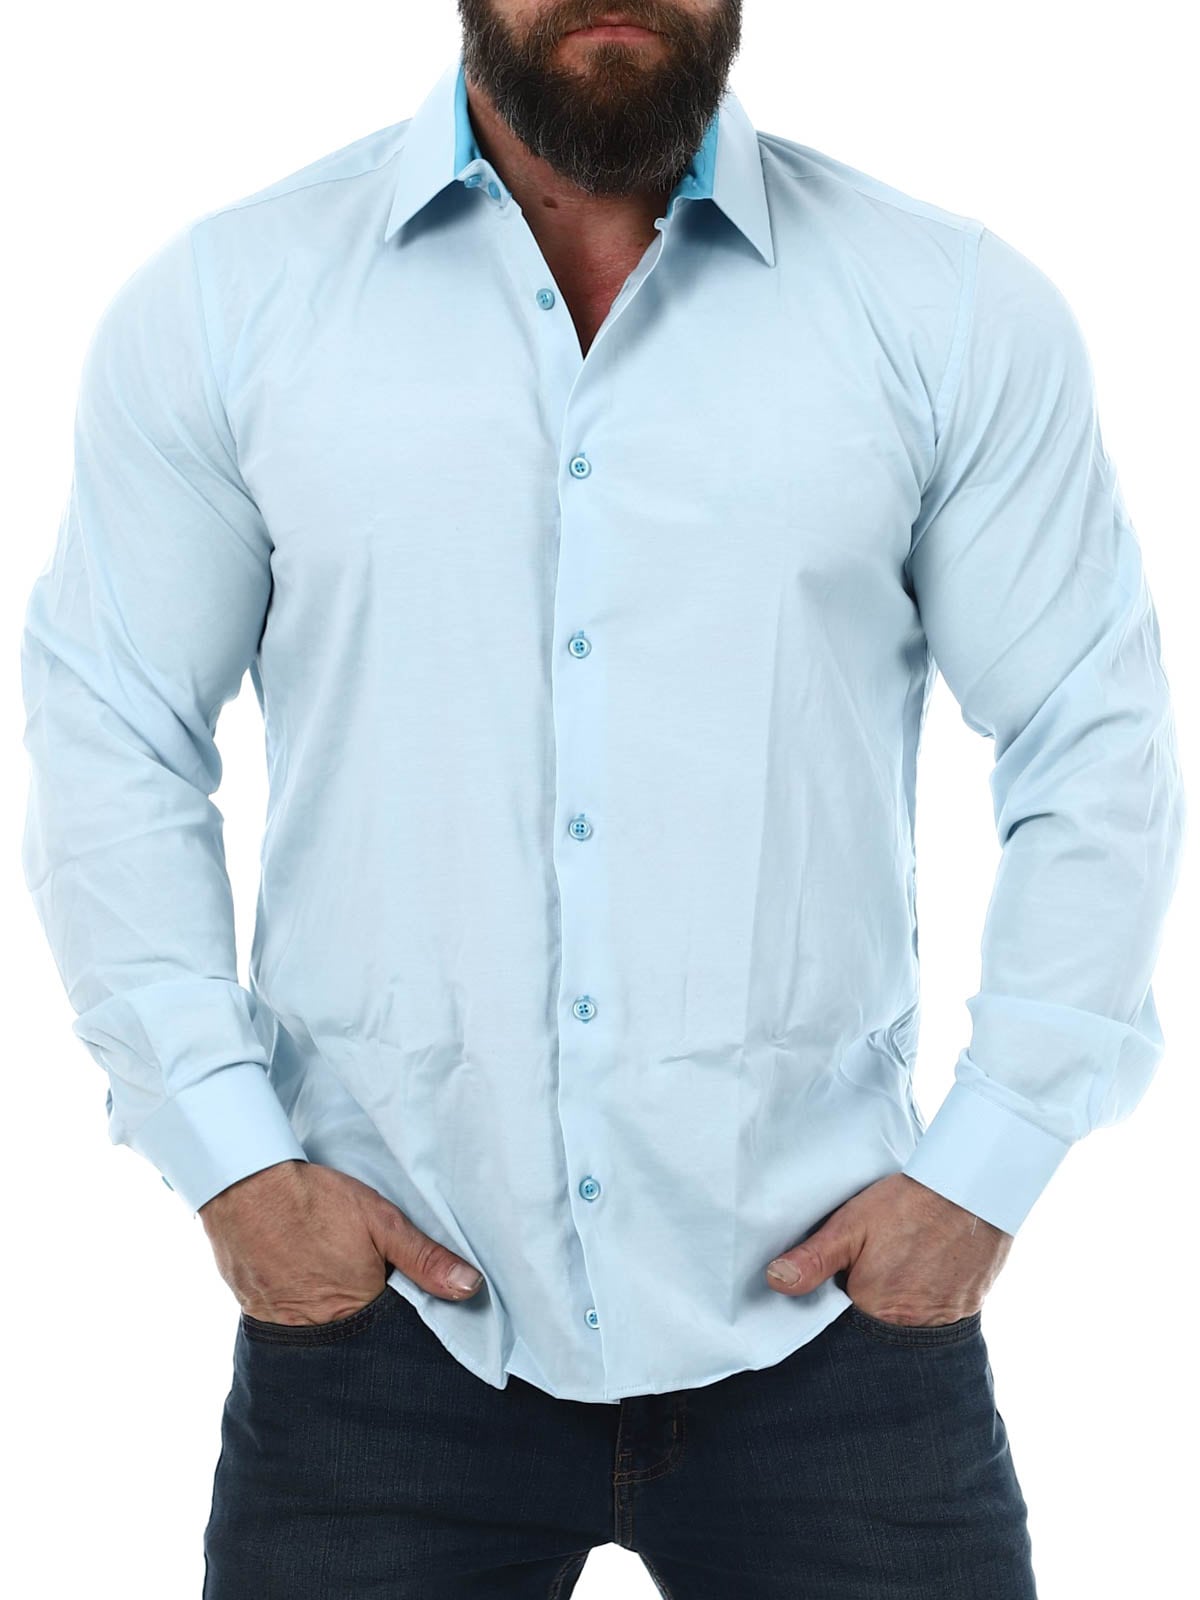 CASSIAN RUSTY NEAL Shirt Light Blue_1.jpg